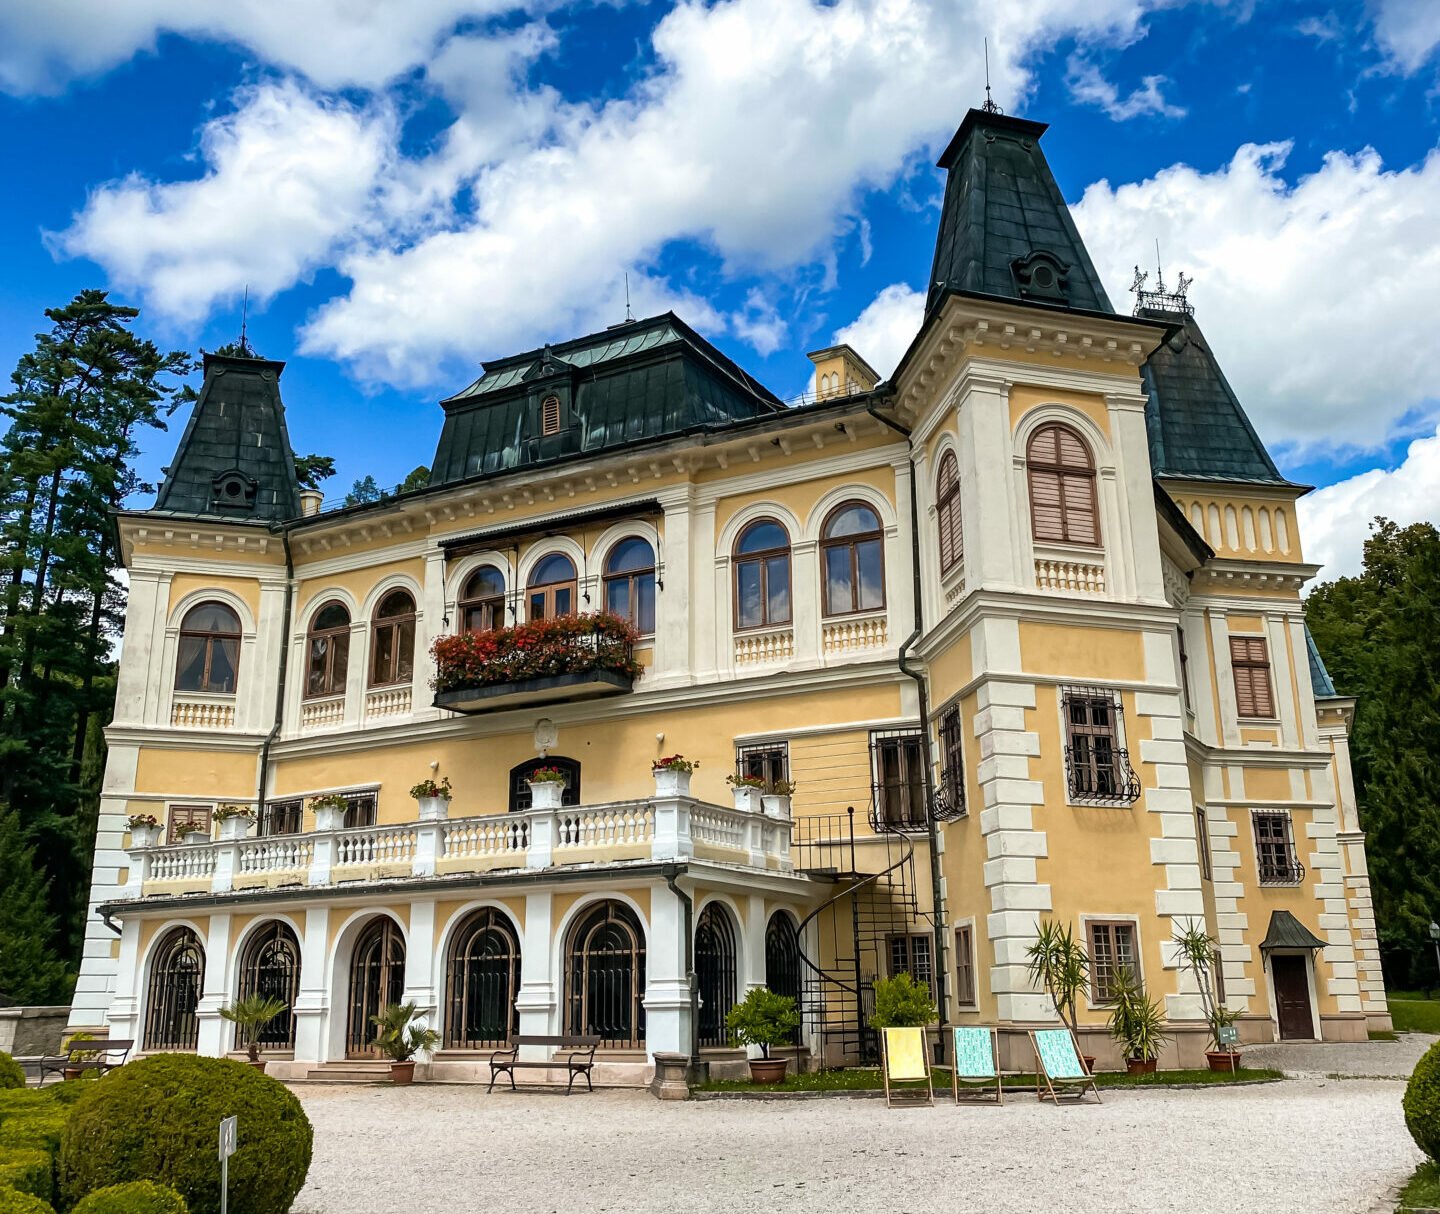 Spoznáte všetky zaujímavé miesta na východnom Slovensku? Prinášame vám TIPY na výlet